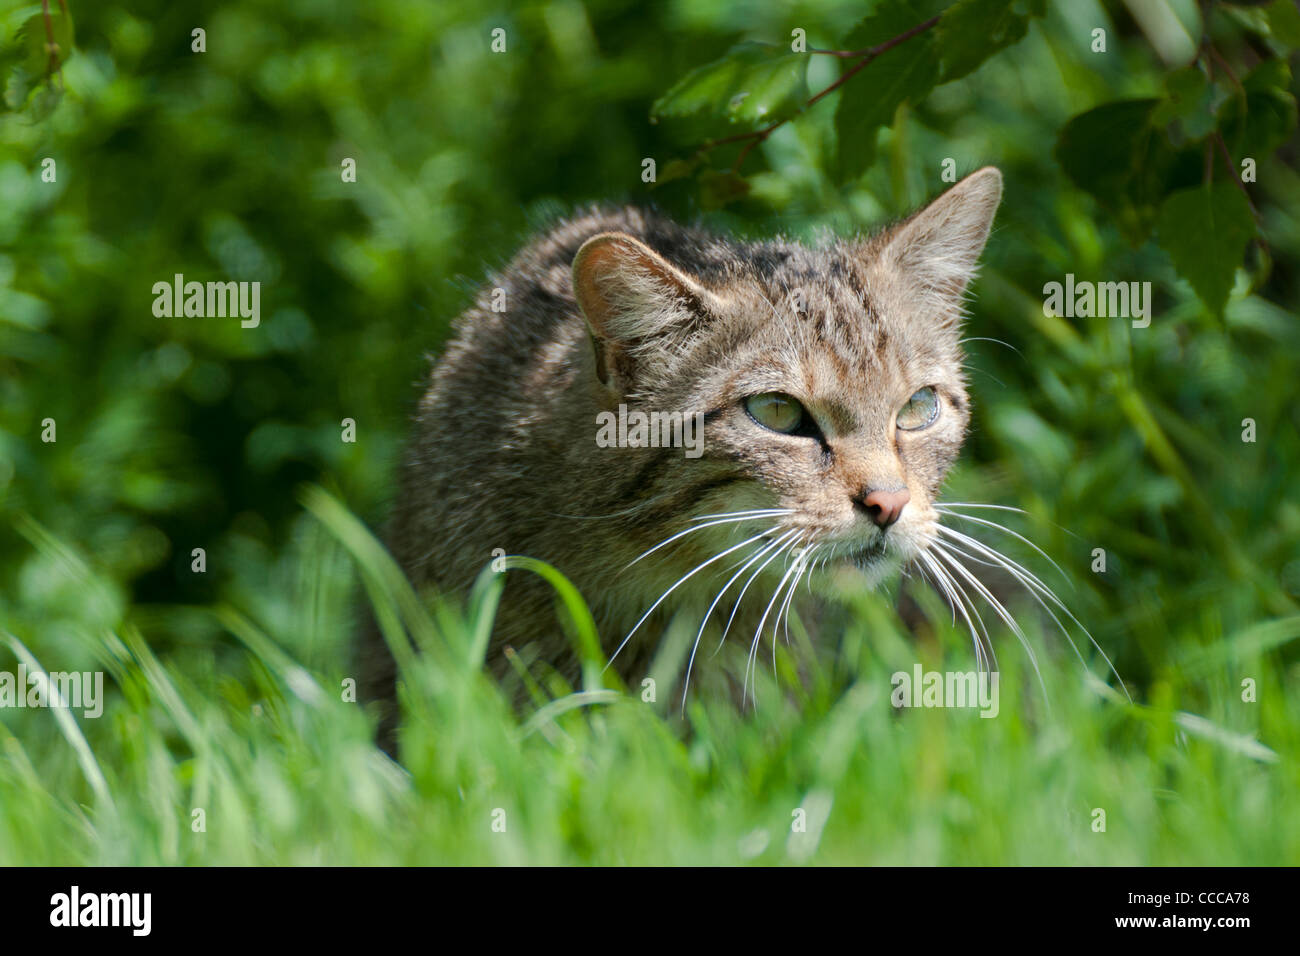 Scottish gatto selvatico (Felis silvestris grampia) Foto Stock